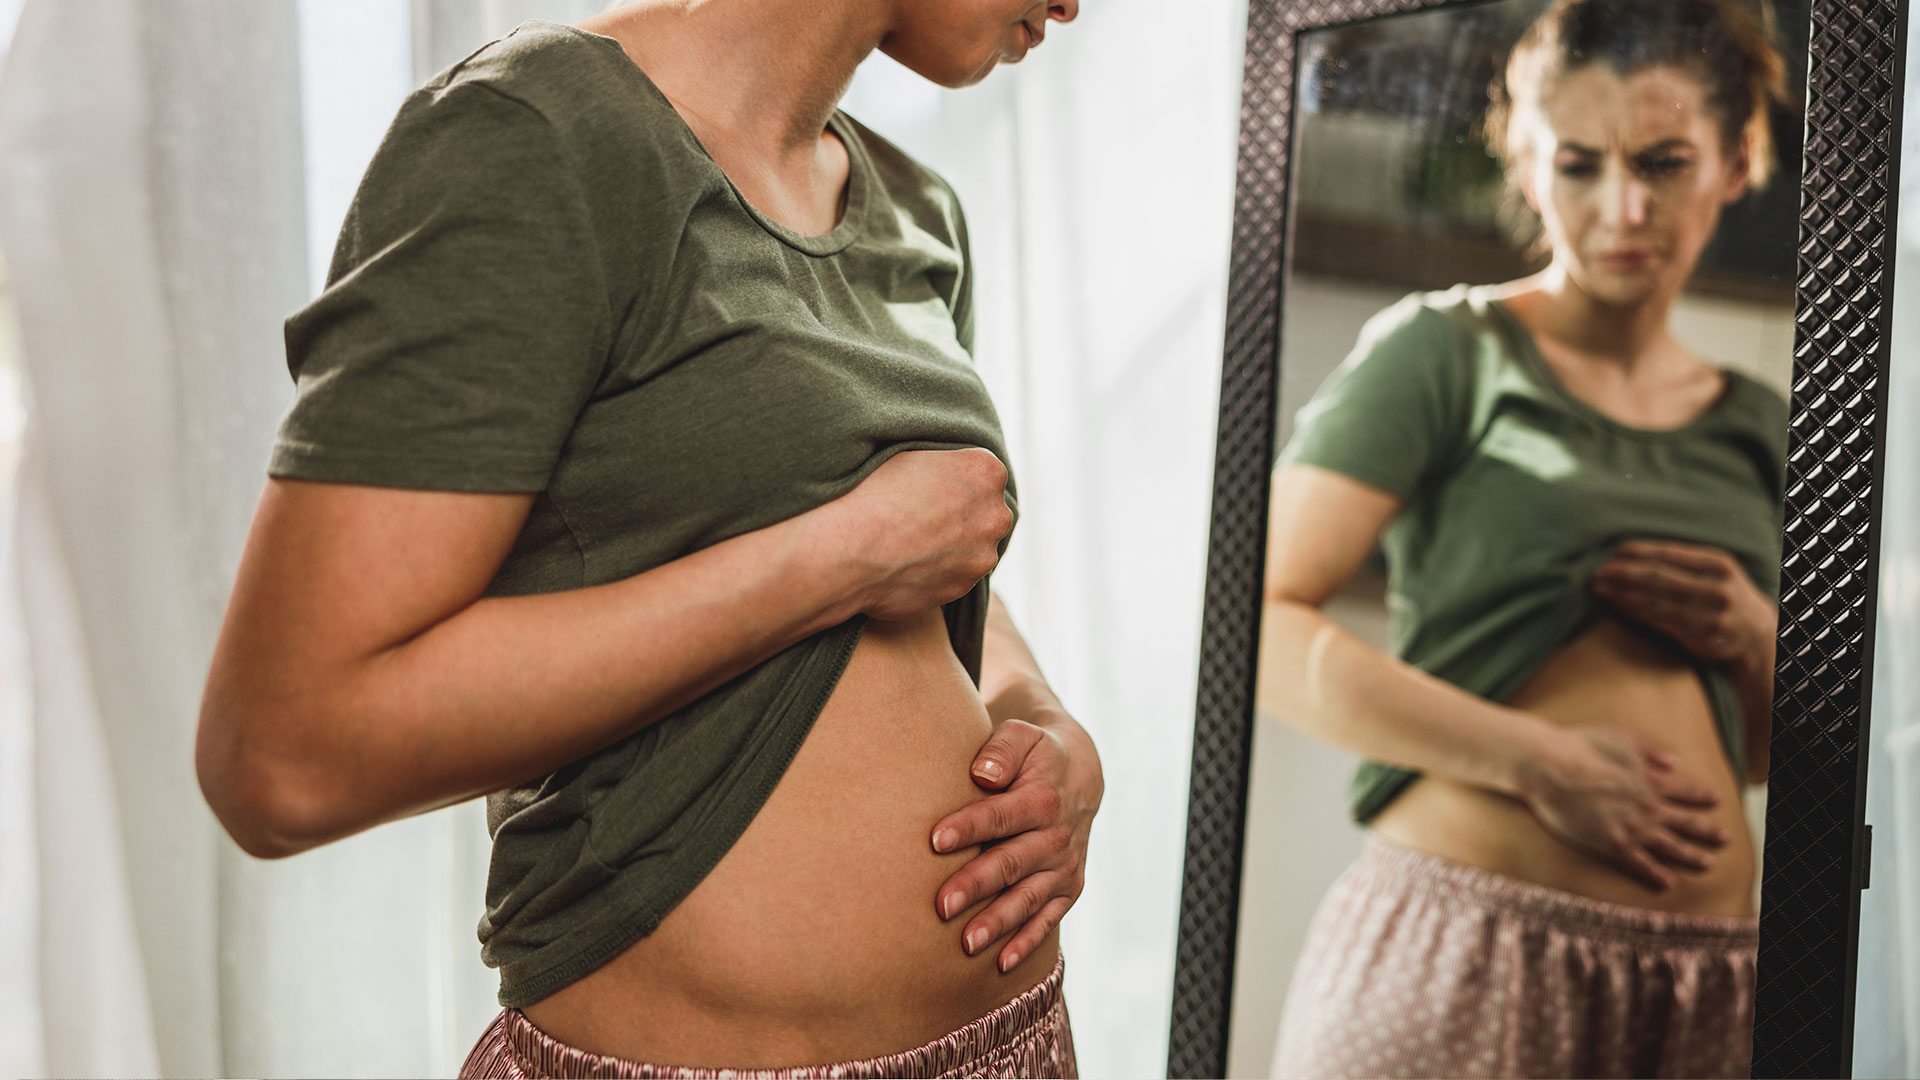 Donna Unfruchtbarkeit Bei Frauen Ursachen Behandlungen Und Wann Man Einen Arzt Aufsuchen Sollte